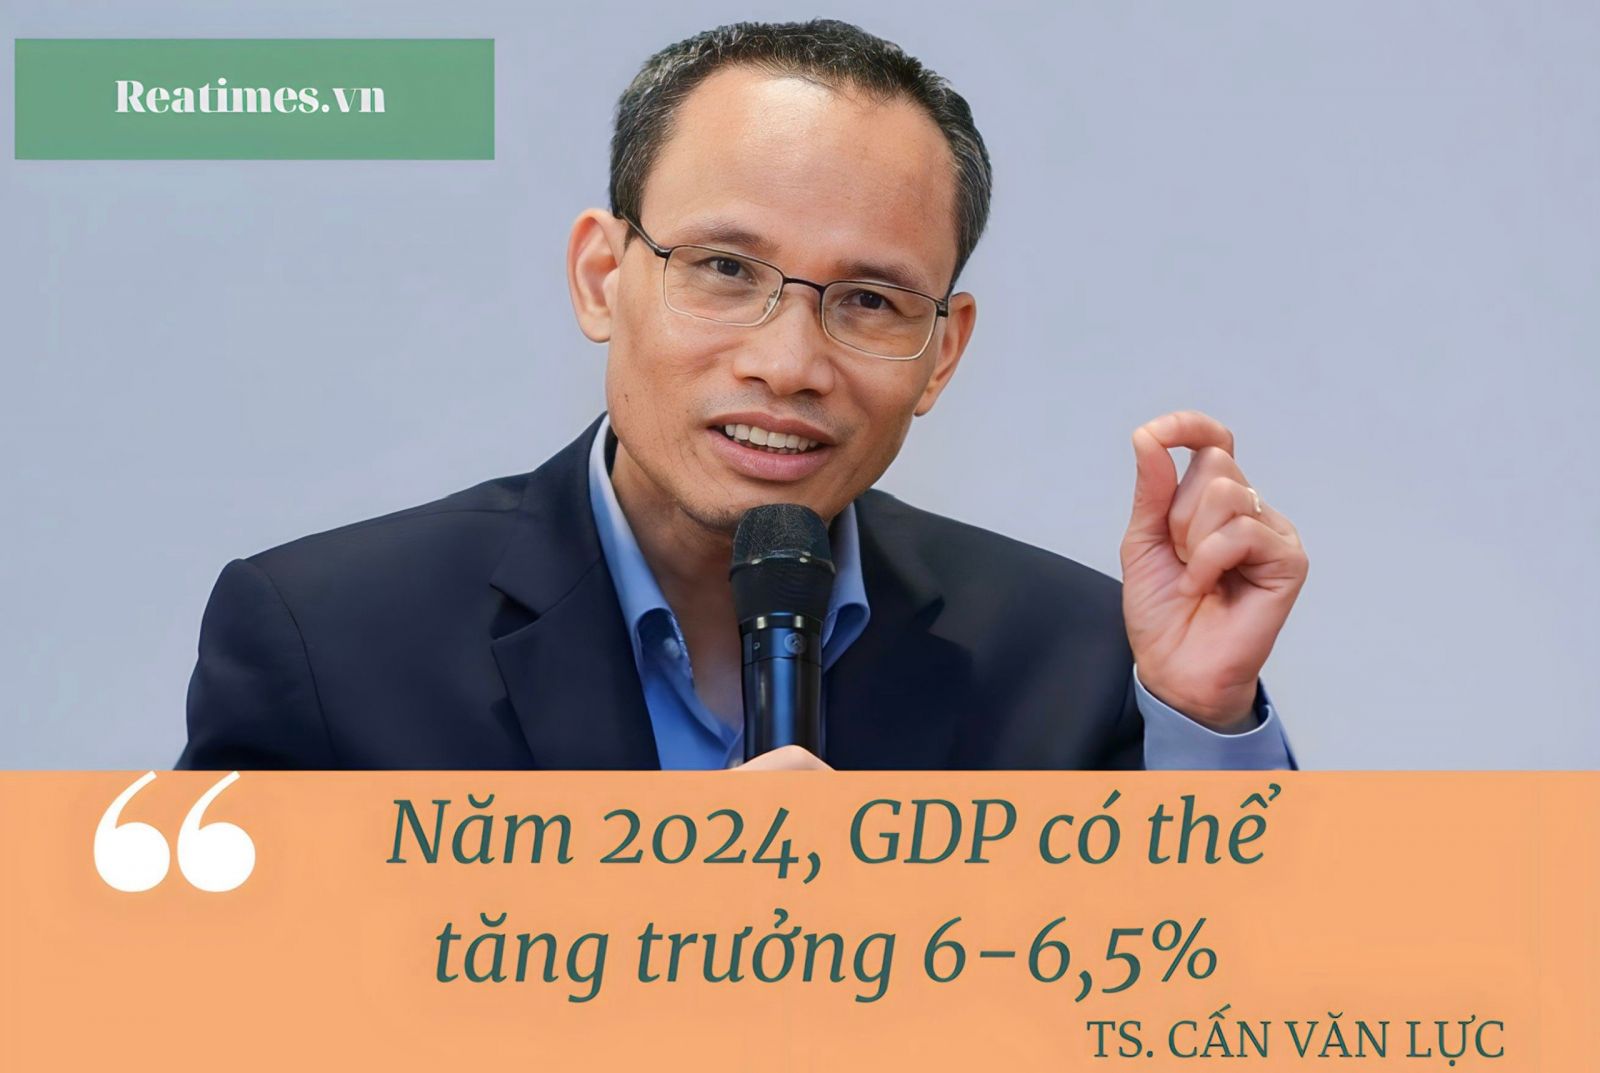 TS. Cấn Văn Lực: “Nếu thuận lợi, tăng trưởng GDP năm 2023 đạt 5,8 - 6%”